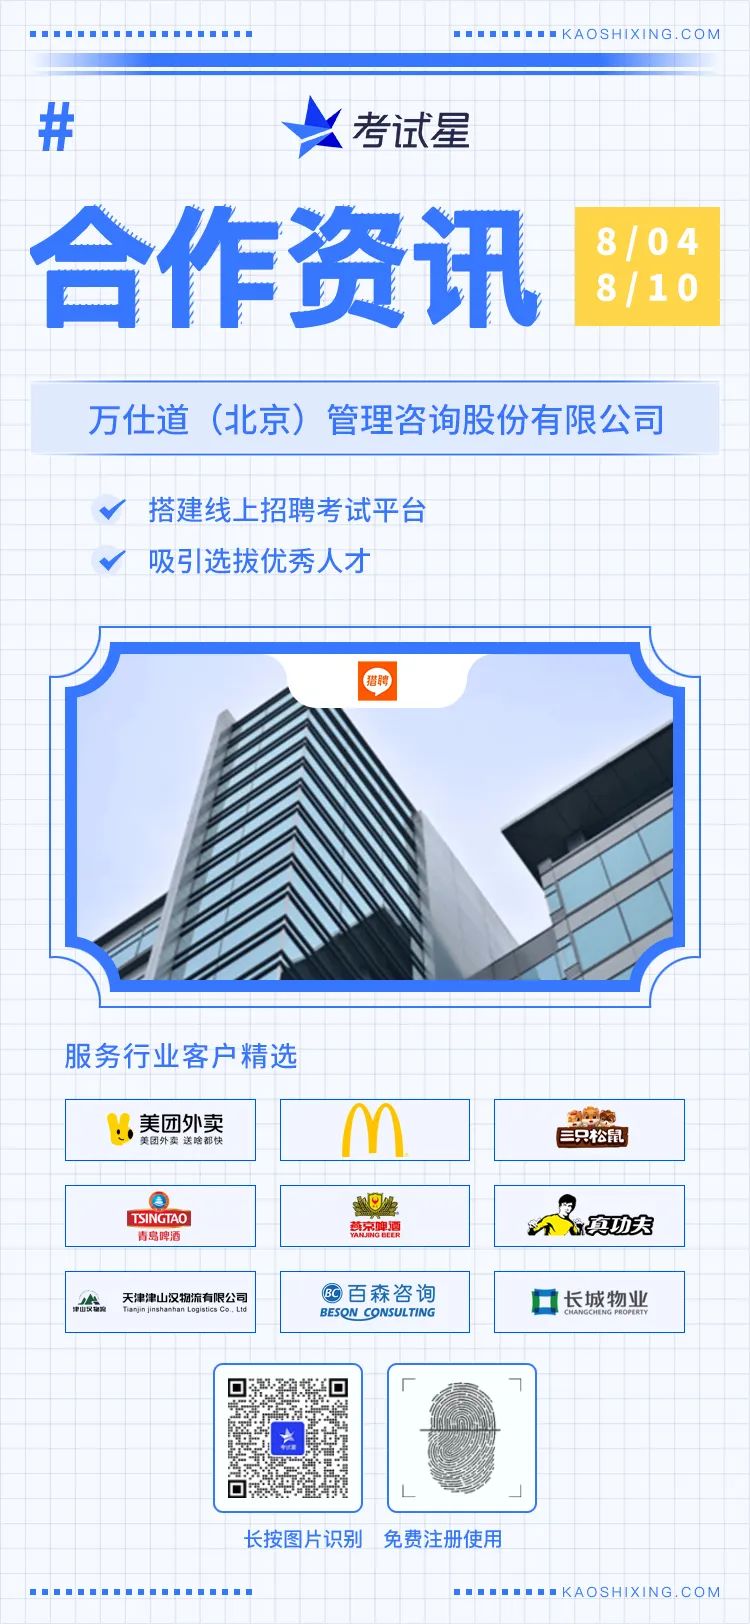 万仕道（北京）管理咨询股份有限公司-线上招聘考试平台